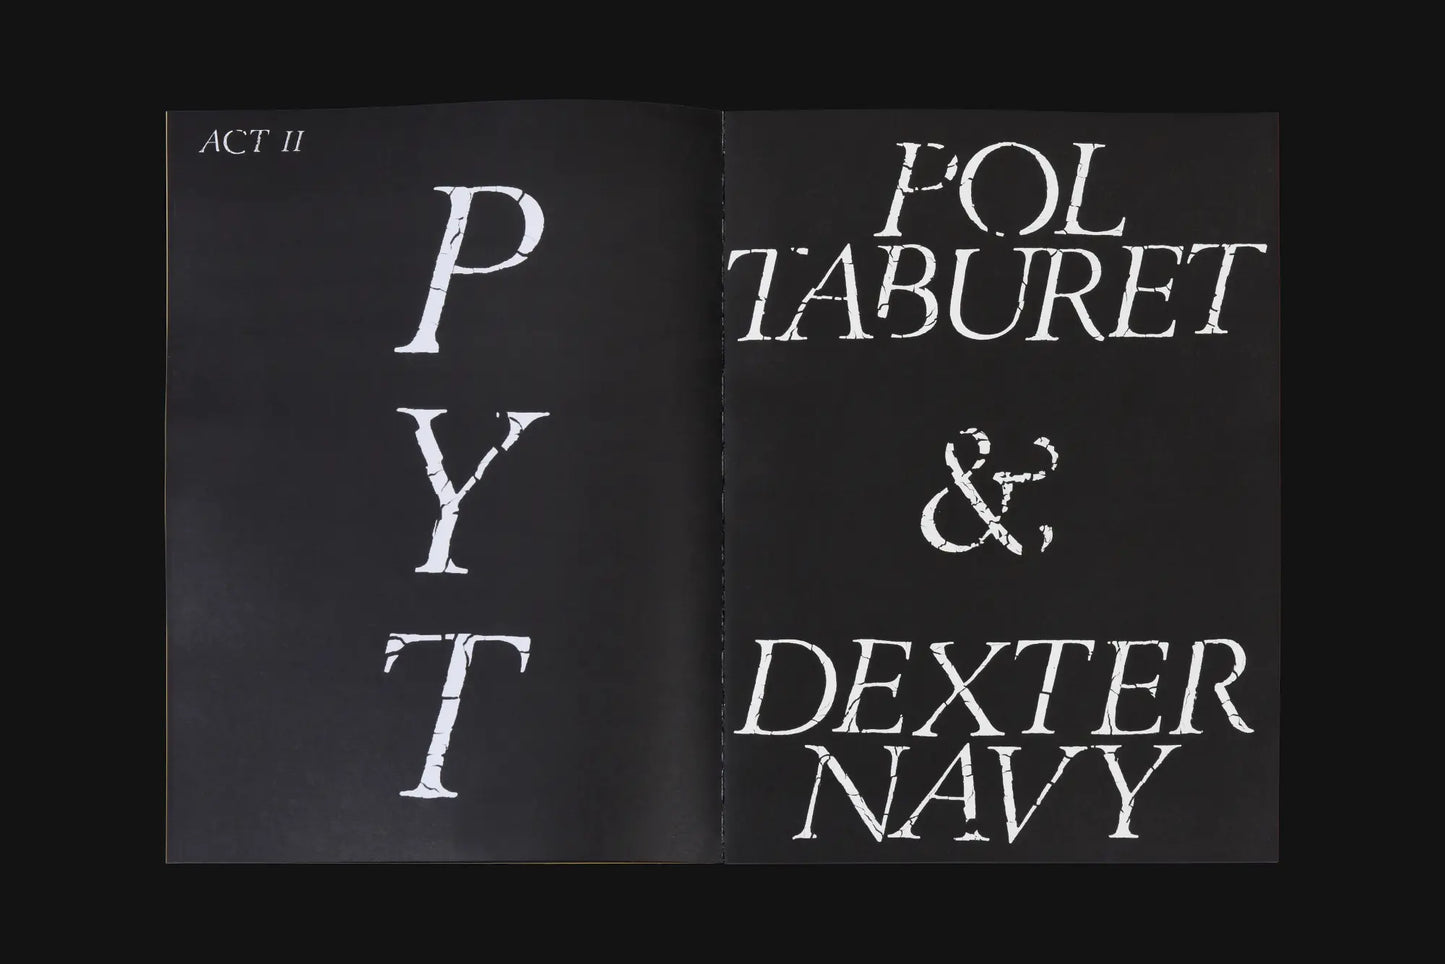 Issue 10: Pol Taburet / Dexter Navy